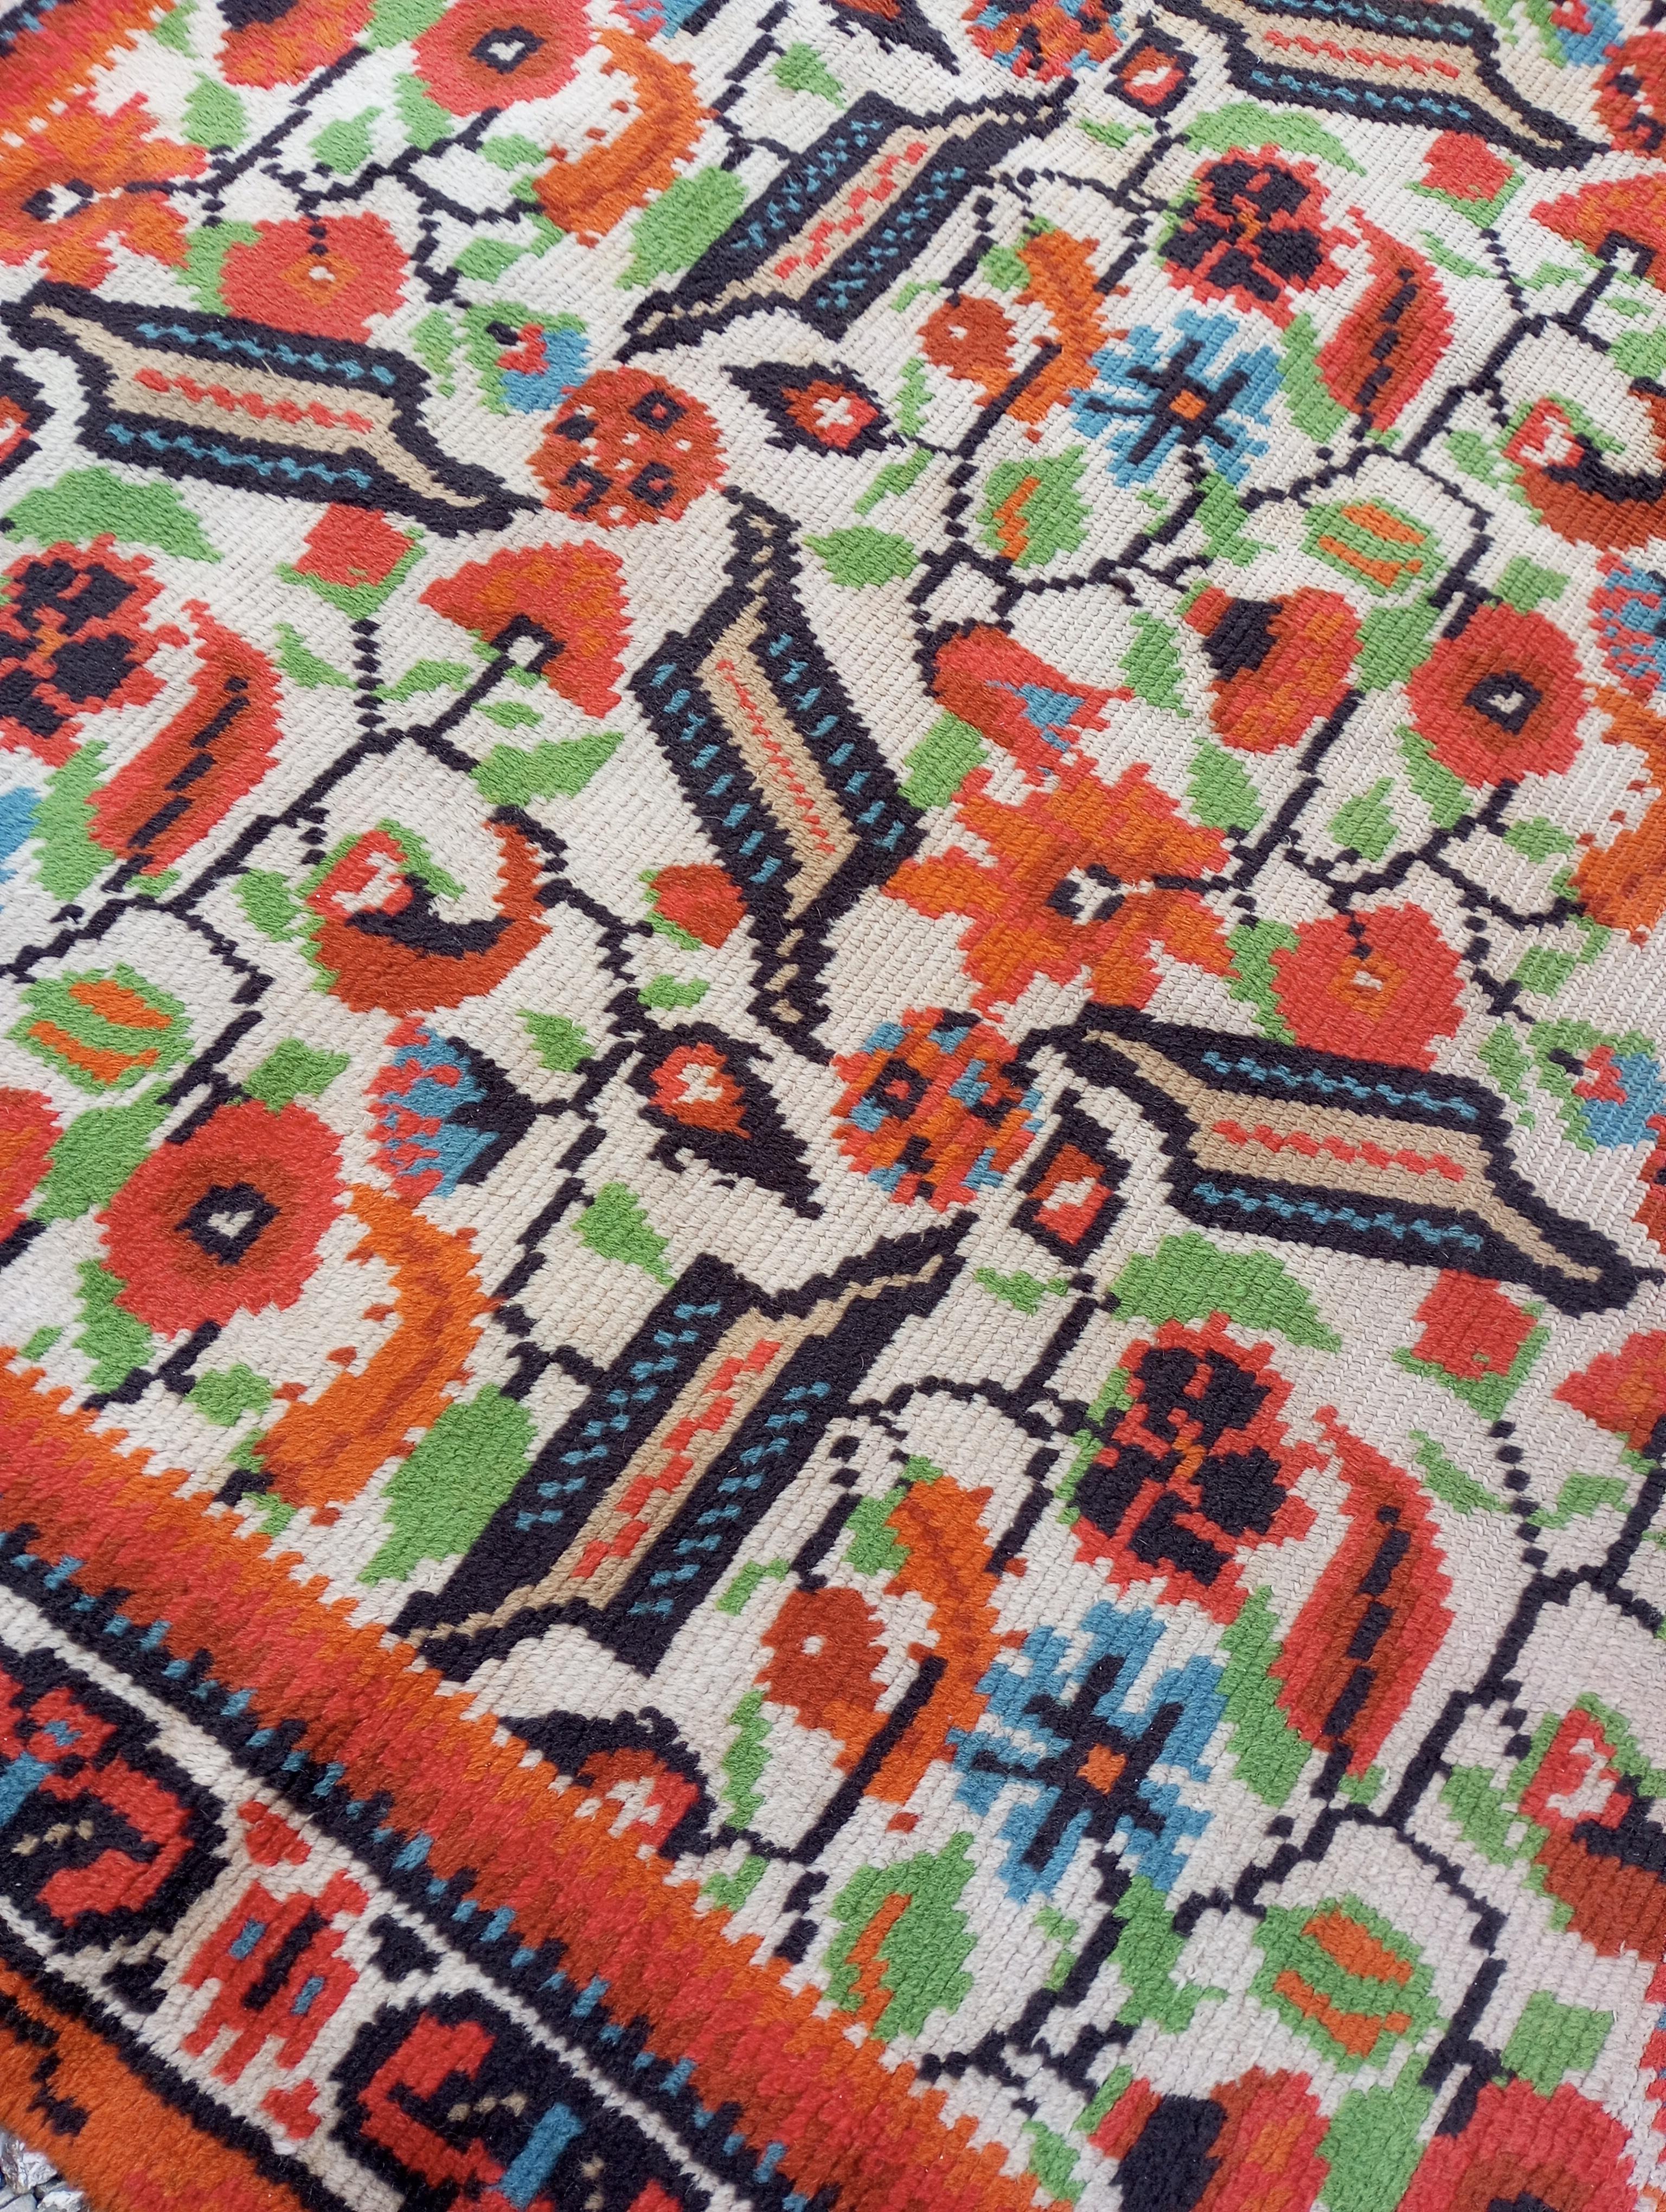 
Der europäische Teppich im anatolischen Stil mit Ushak-Vogelmotiv, vollständig in Österreich handgefertigt, ist ein textiles Meisterwerk, das anatolische Kunsttradition mit österreichischer Handwerkskunst verbindet. Handgeknüpft aus reiner Wolle